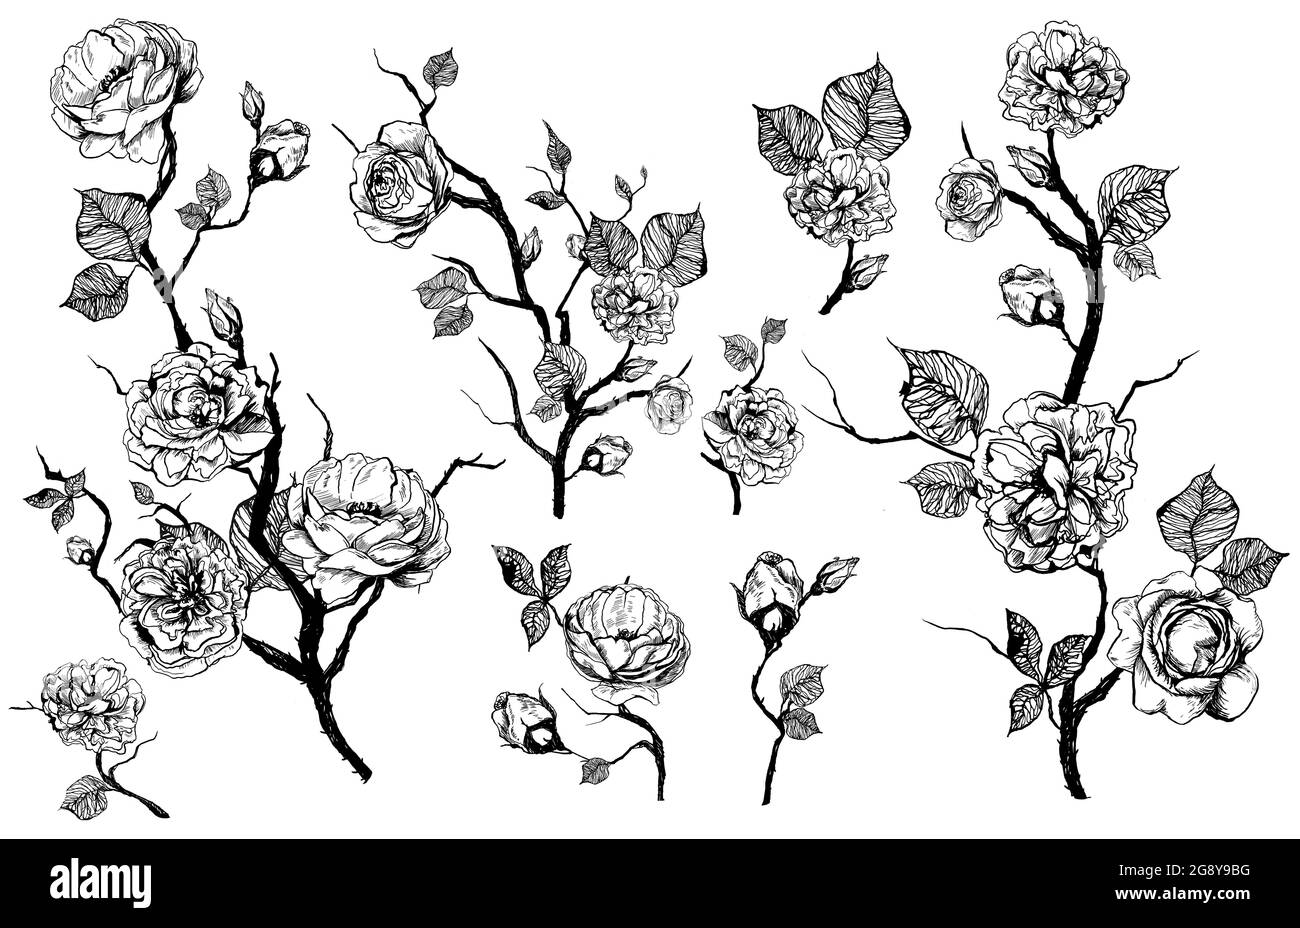 Ensemble de fleurs graphiques dessinées à la main avec roses et feuilles. Éléments isolés sur fond blanc Banque D'Images